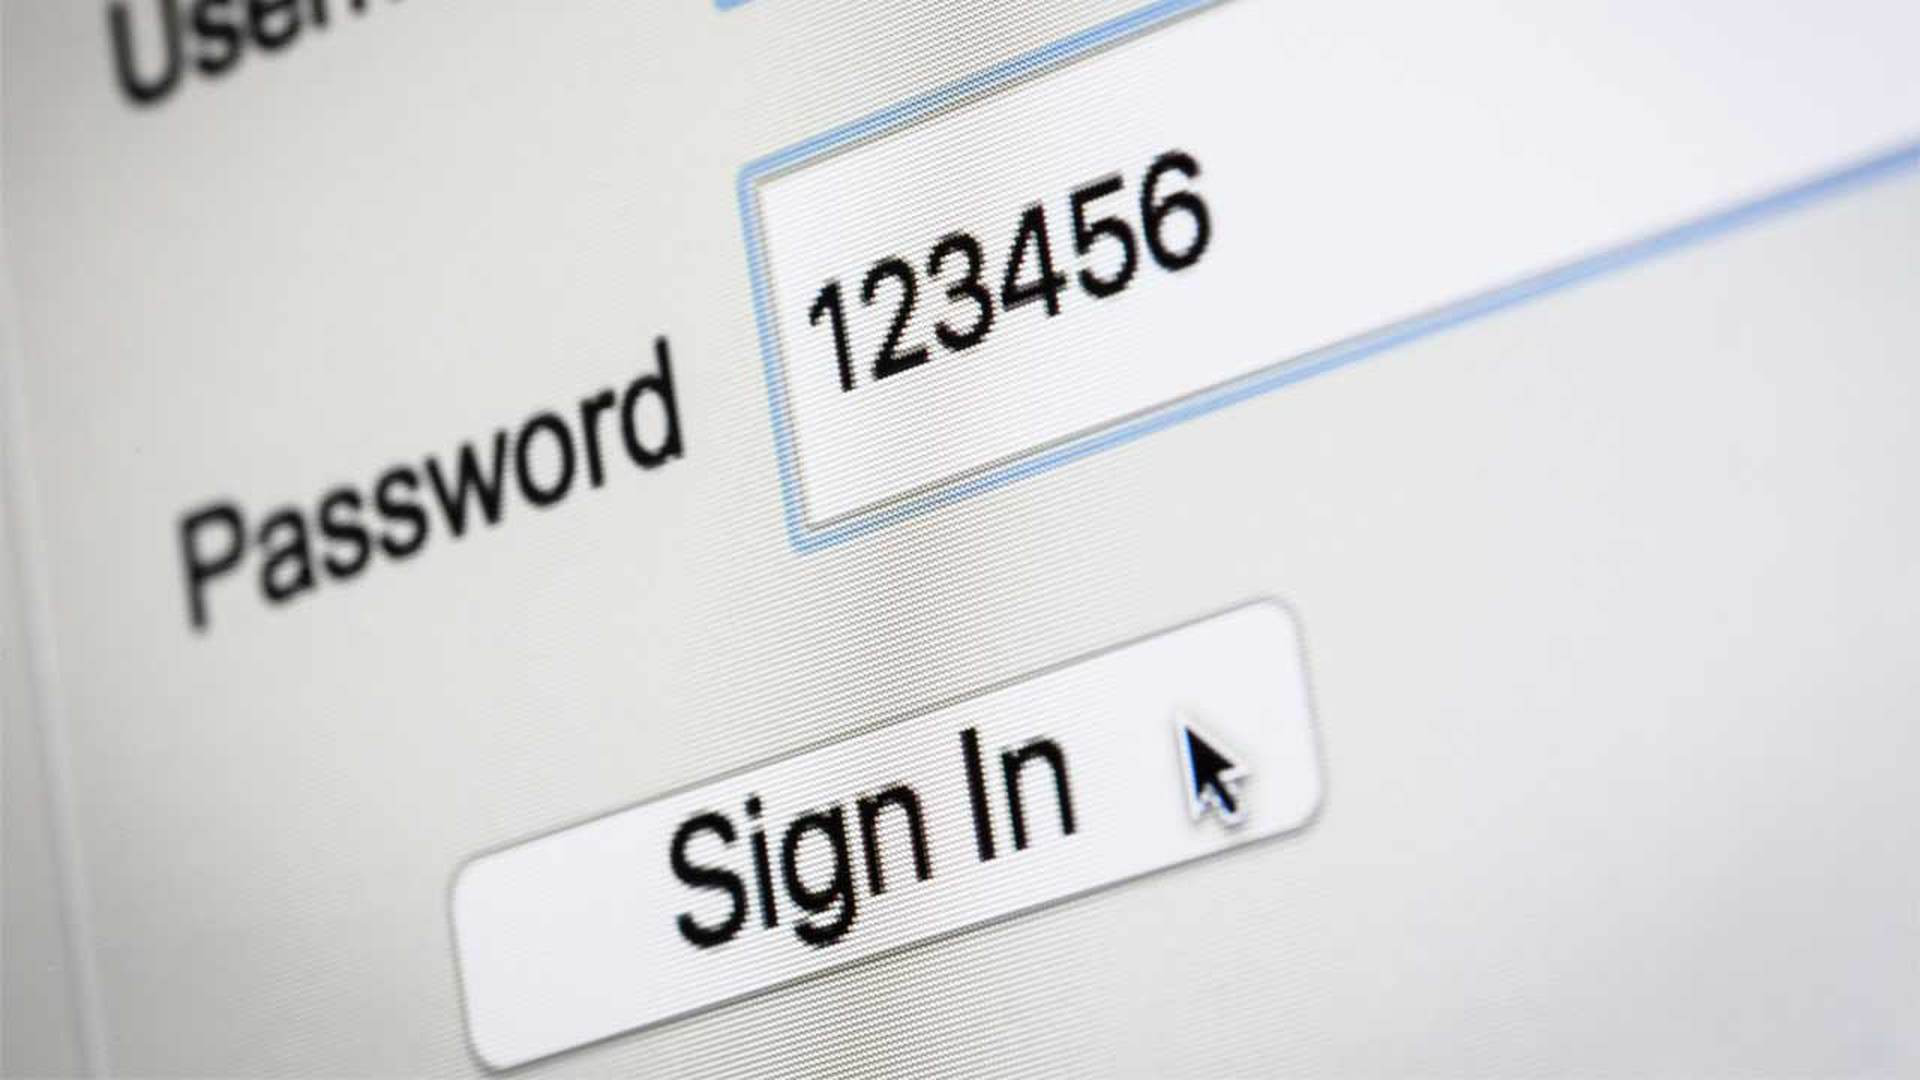 12345, 111111 та жіночі імена: склали ТОП-10 найгірших паролів 2019 року